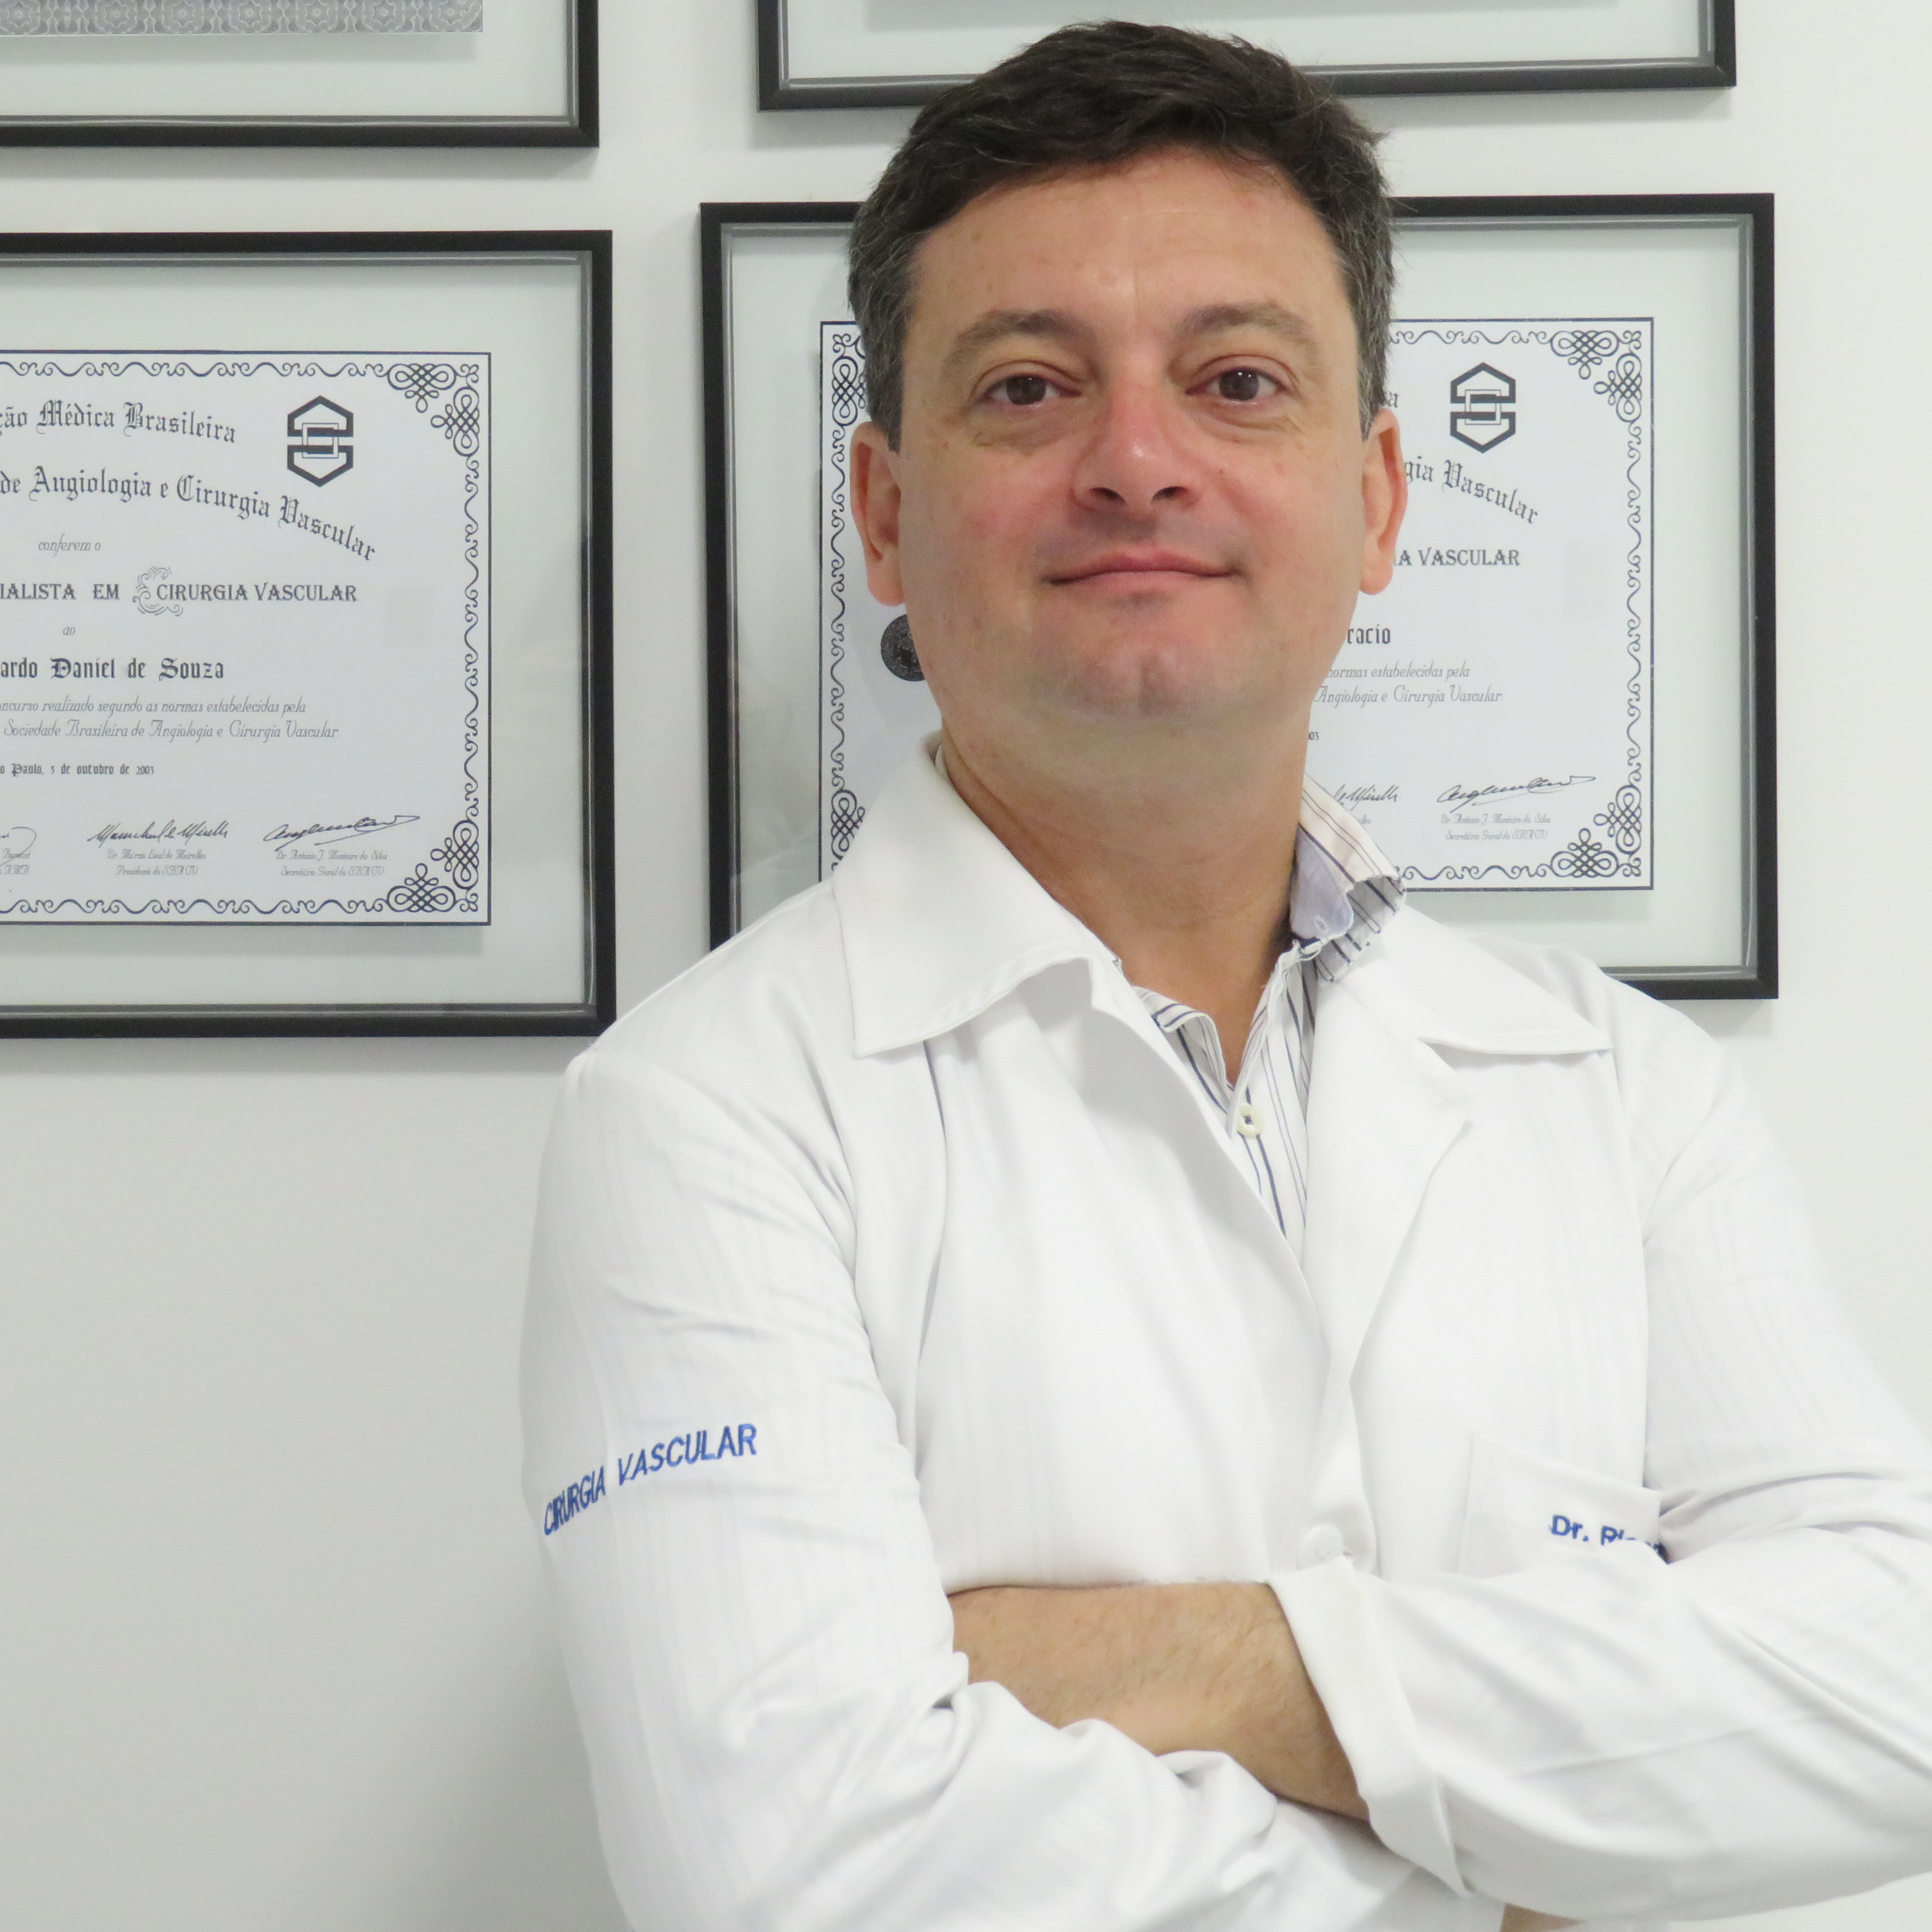 Dr. Ricardo Daniel de Souza